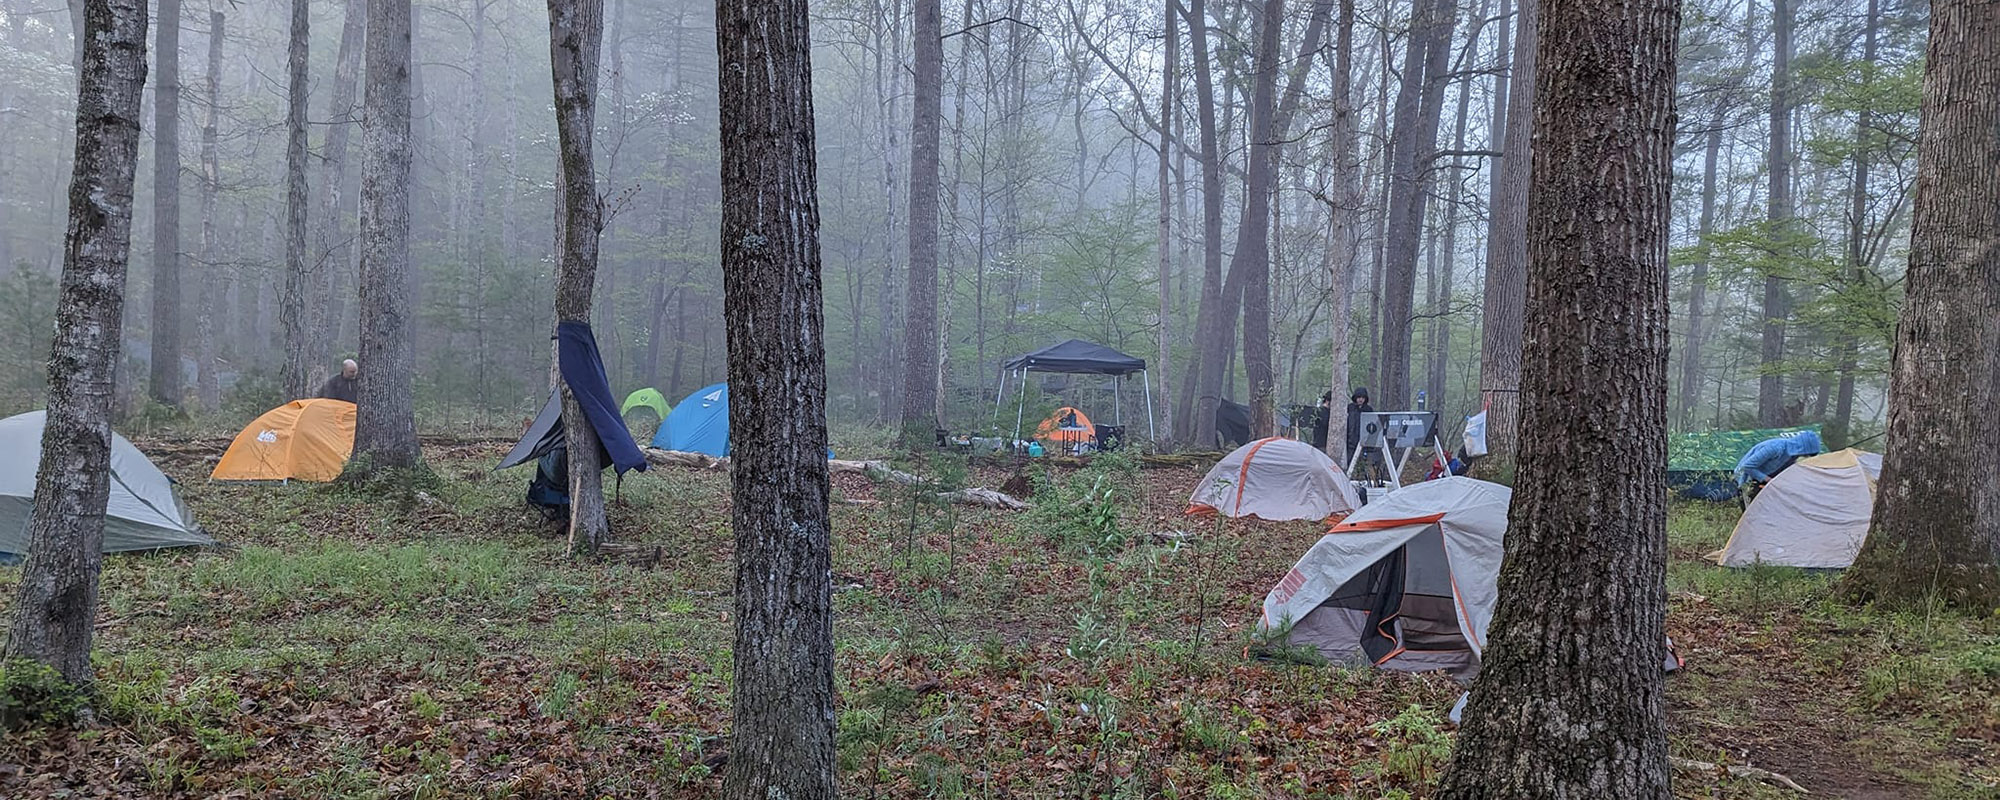 A foggy morning at the campsite on Santos Farm